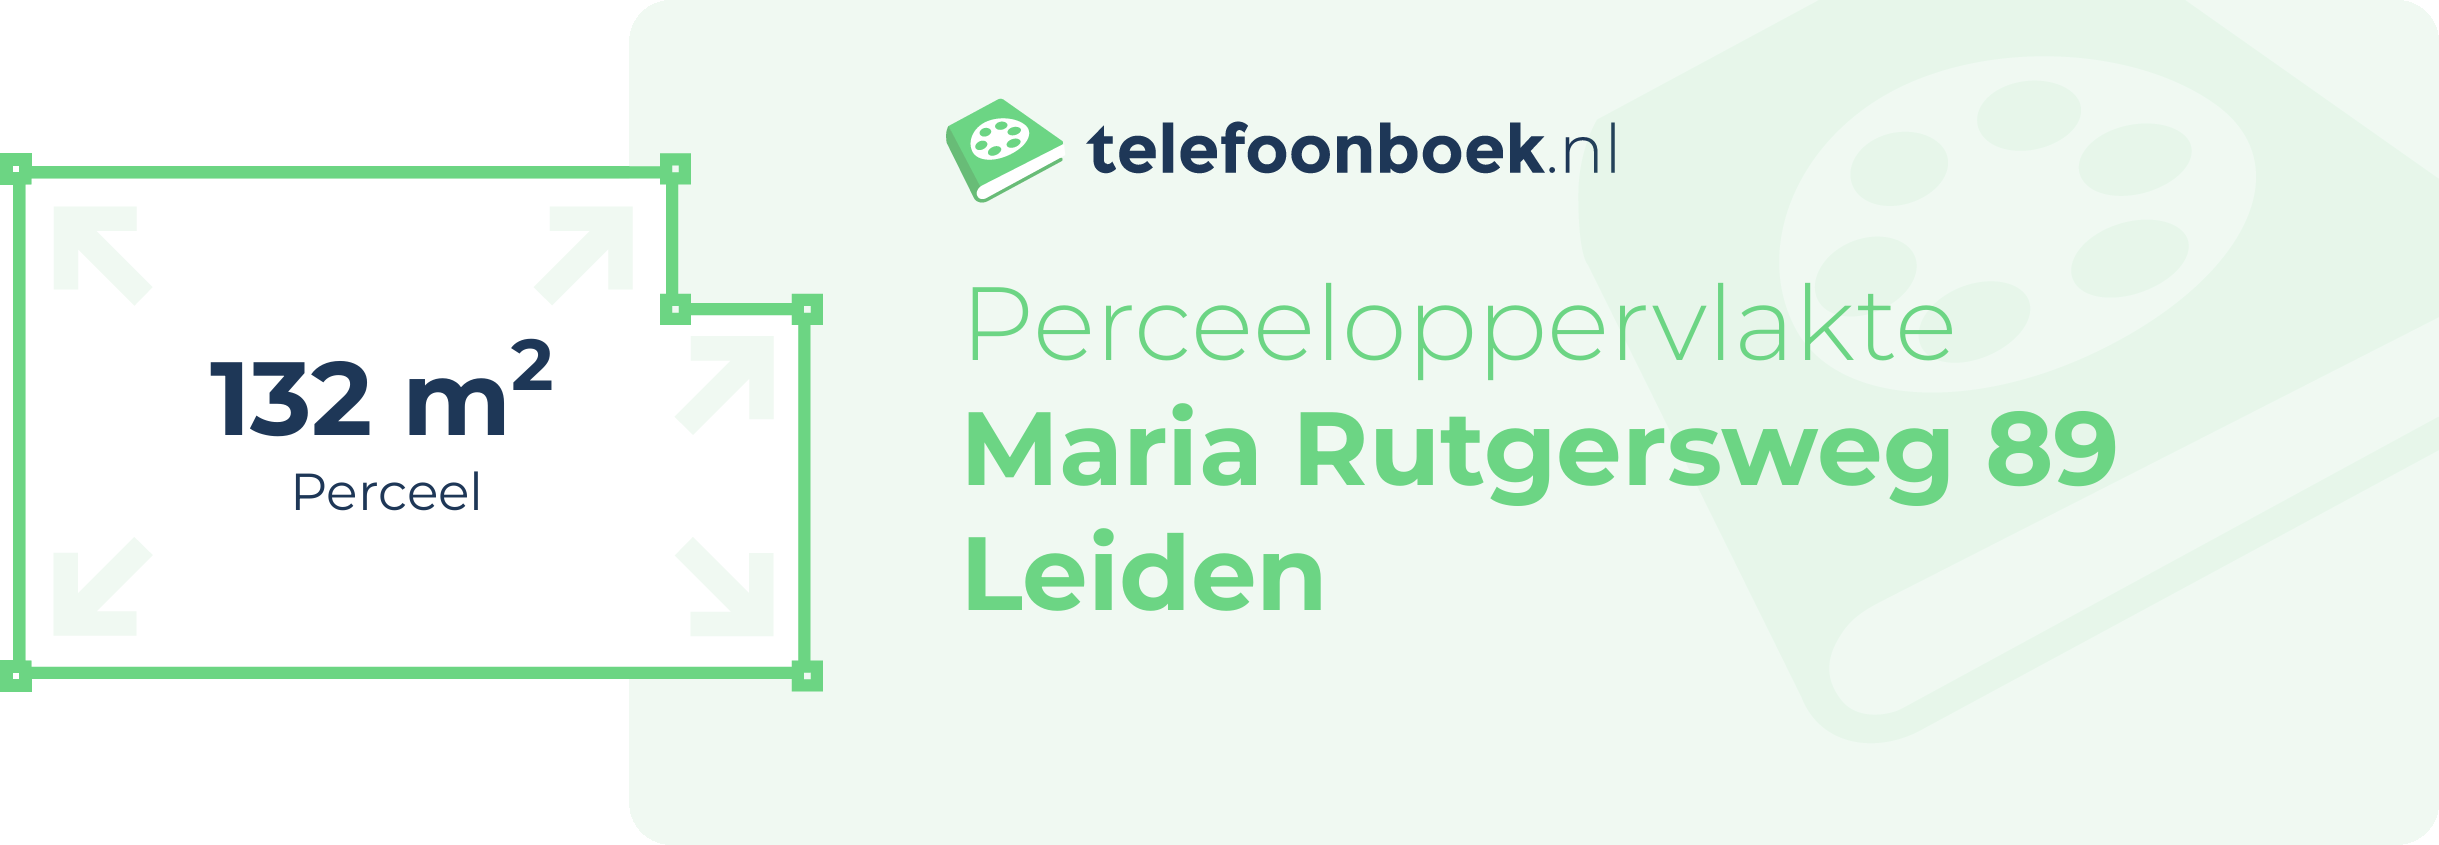 Perceeloppervlakte Maria Rutgersweg 89 Leiden